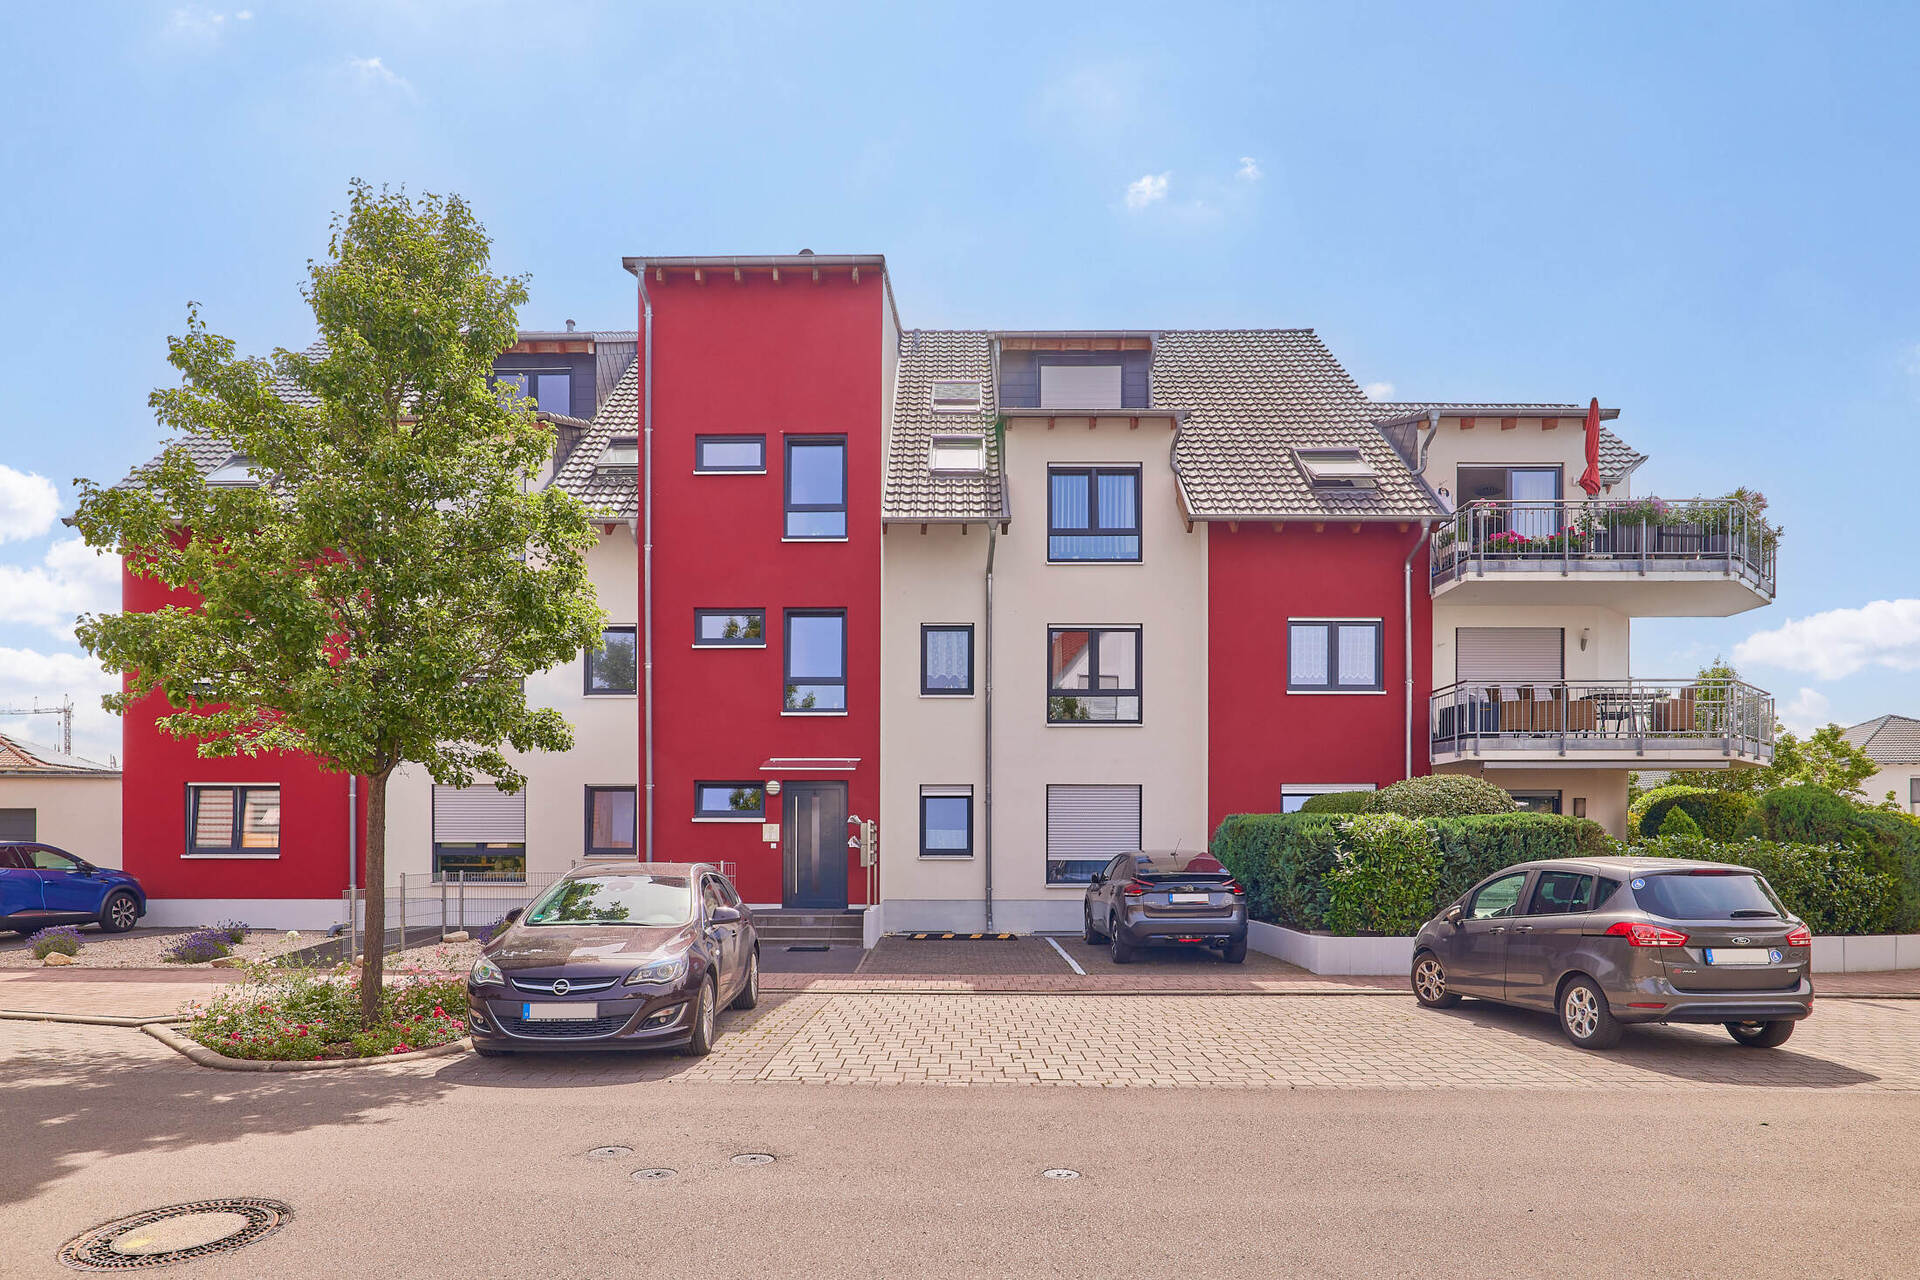 Moderne 3-Zimmer-Wohnung mit Balkon – Barrierefrei leben im Neubaugebiet von Haßloch, 67454 Haßloch, Etagenwohnung